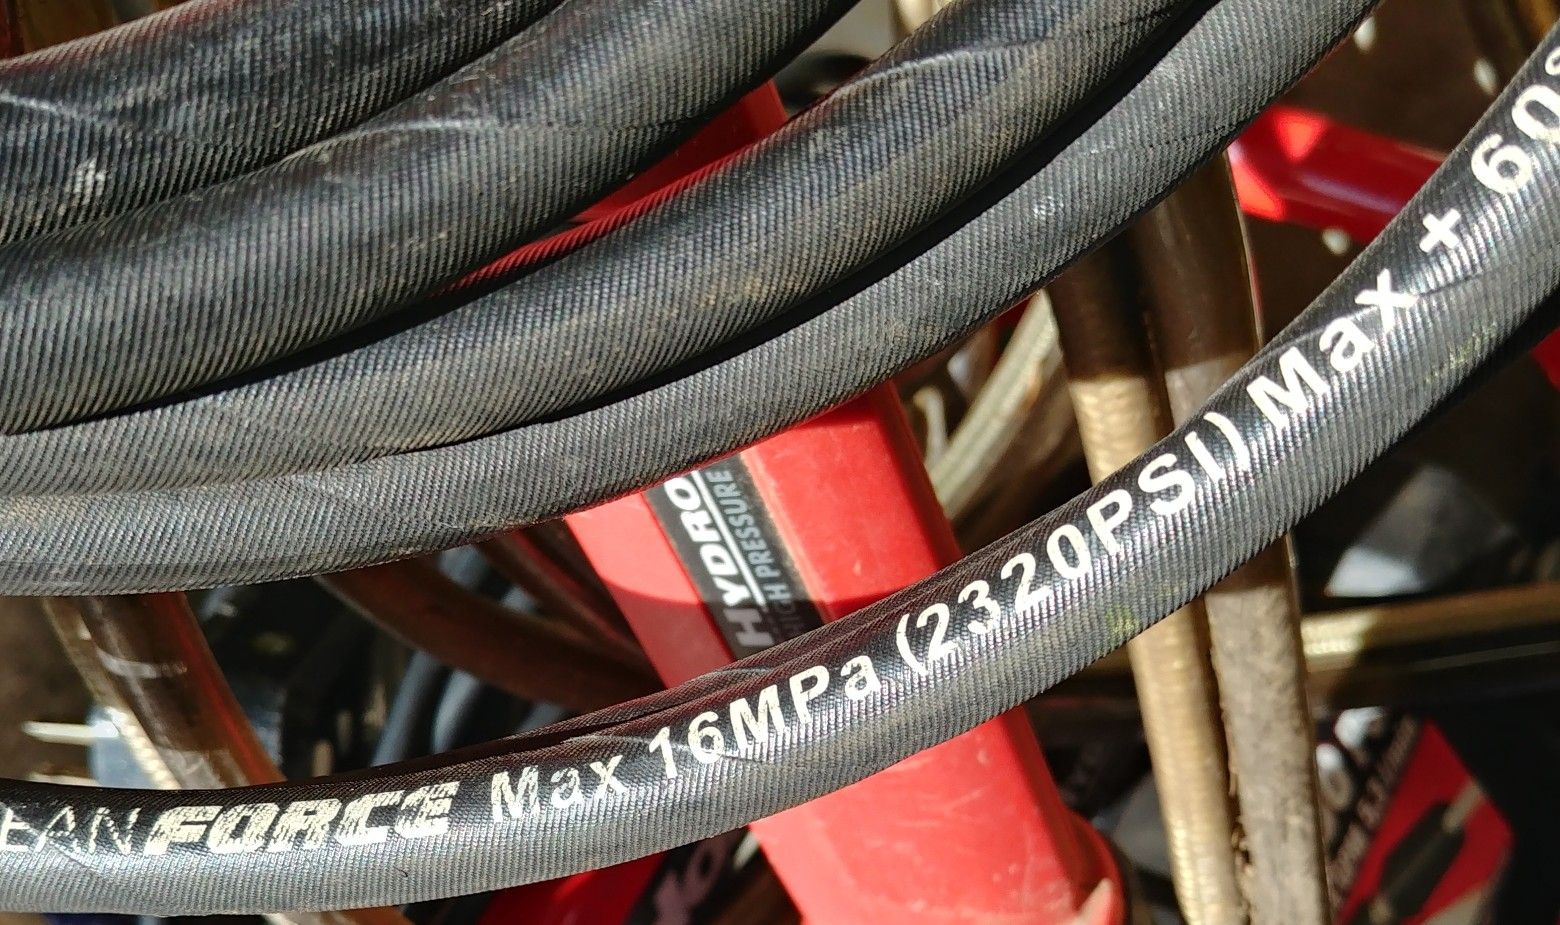 Cleanforce 2320 psi max pressure washer hose (20 feet)